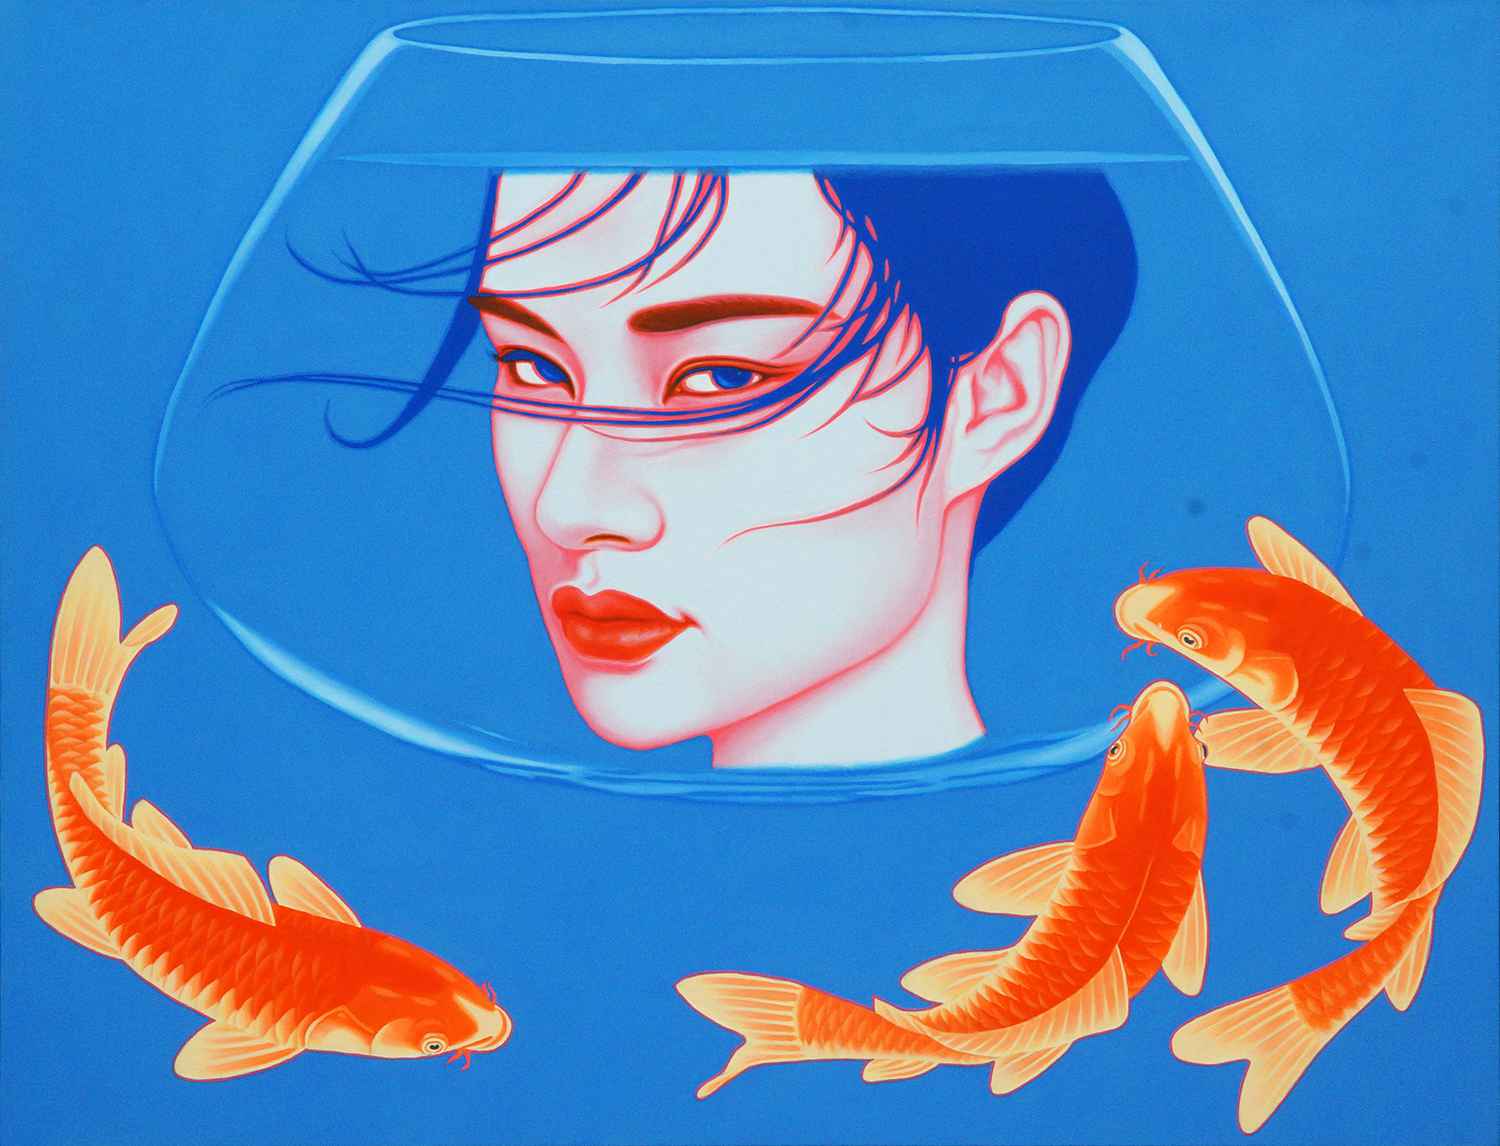 鱼缸女孩 Aquariums Girl 100x130cm 布面油画 oil on canvas